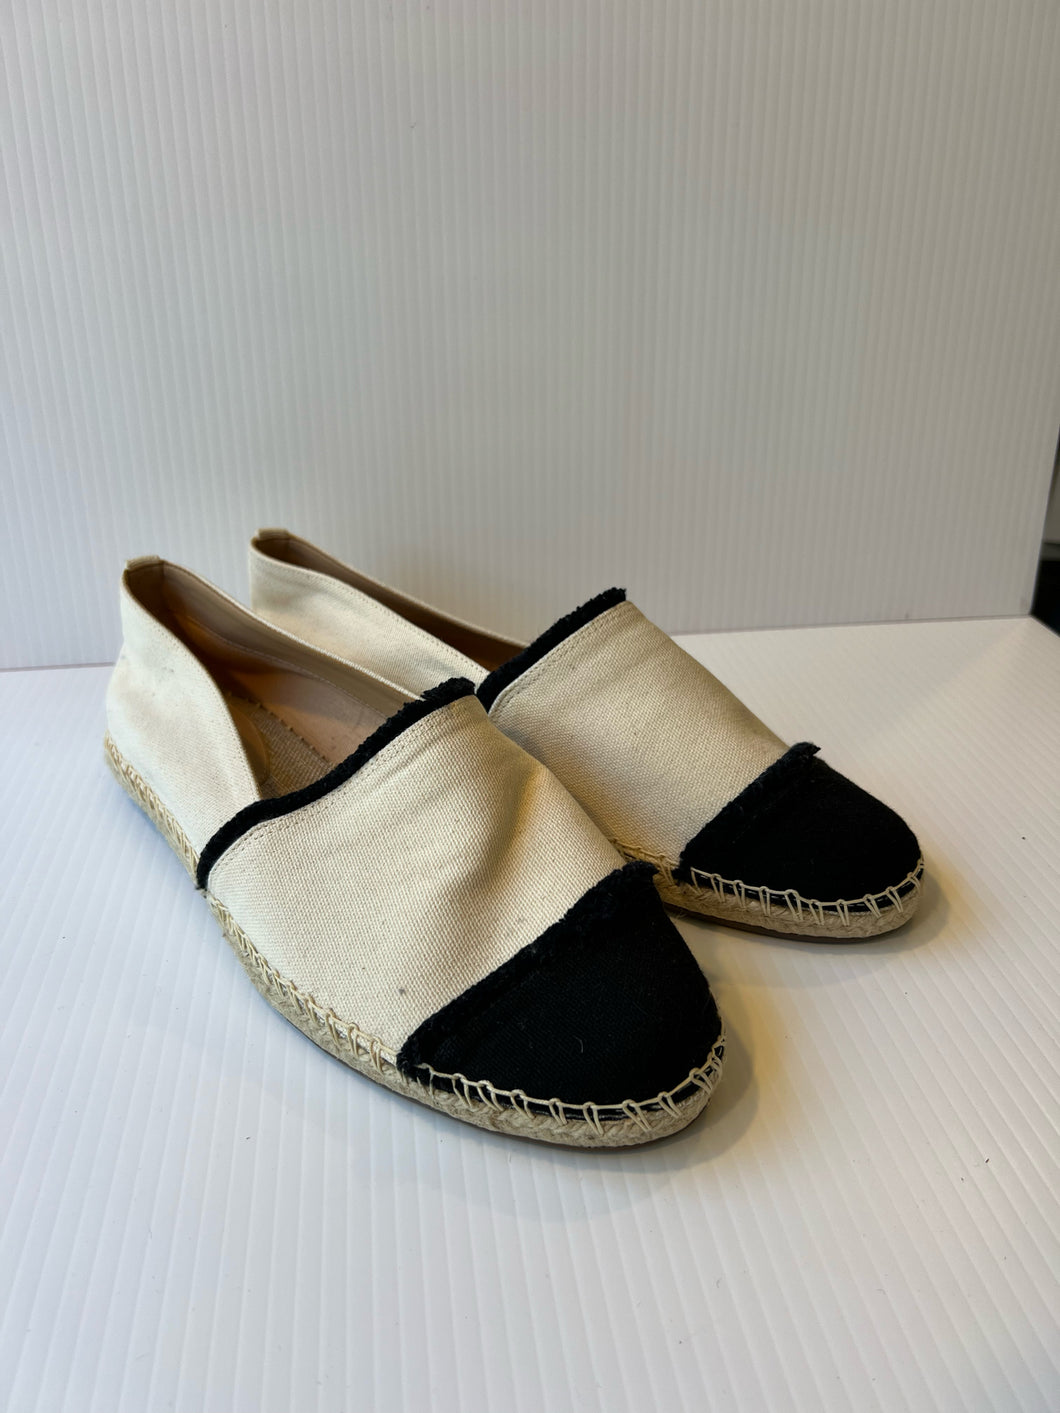 Schutz Size 9.5 Wht/Blk Shoes- Ladies